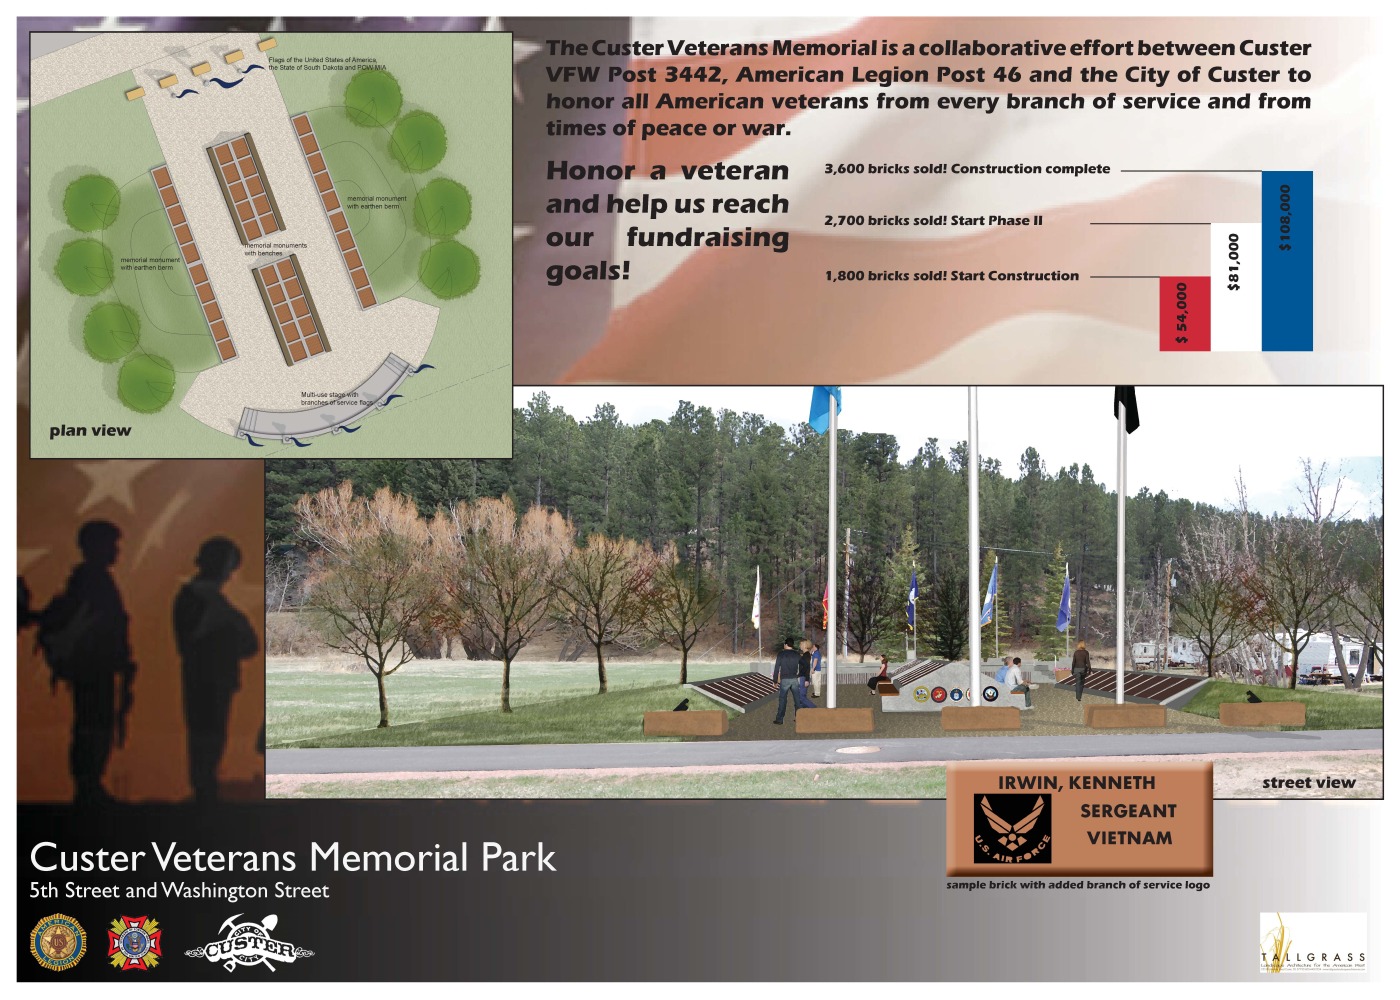 Custer Veteran's Memorial Park